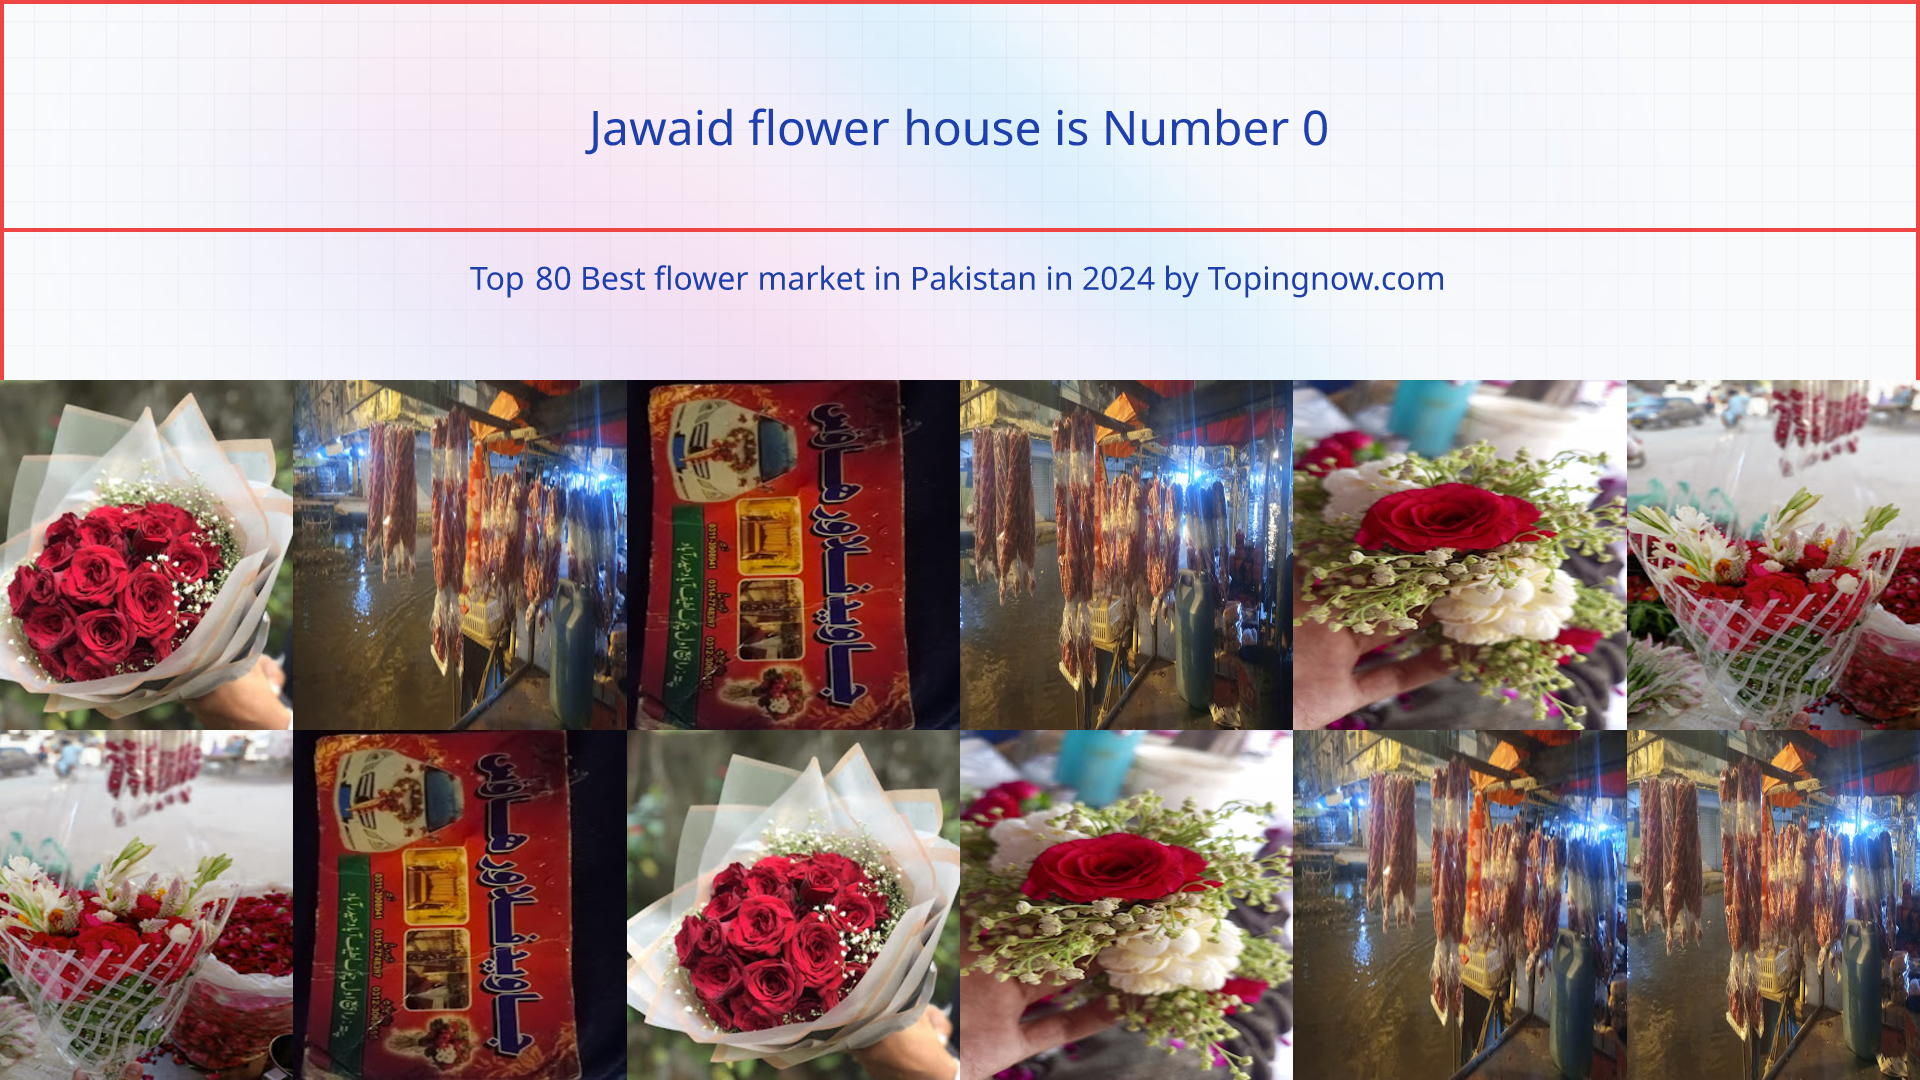 Jawaid flower house: Top 80 Best flower market in Pakistan in 2024